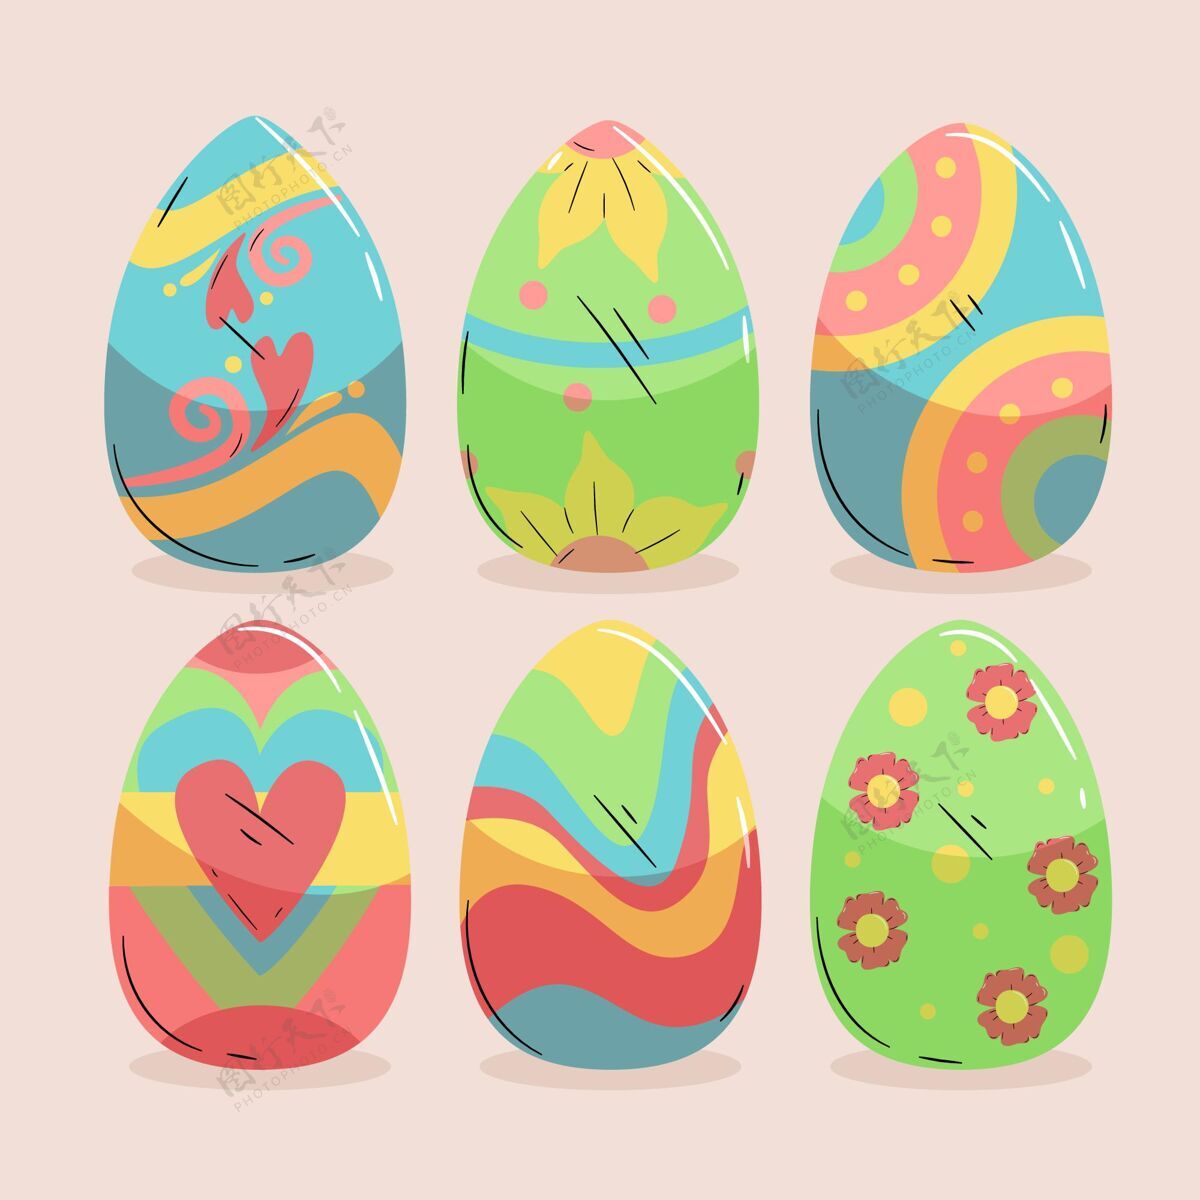 Pascha彩色手绘装饰复活节彩蛋收藏插图包装华丽